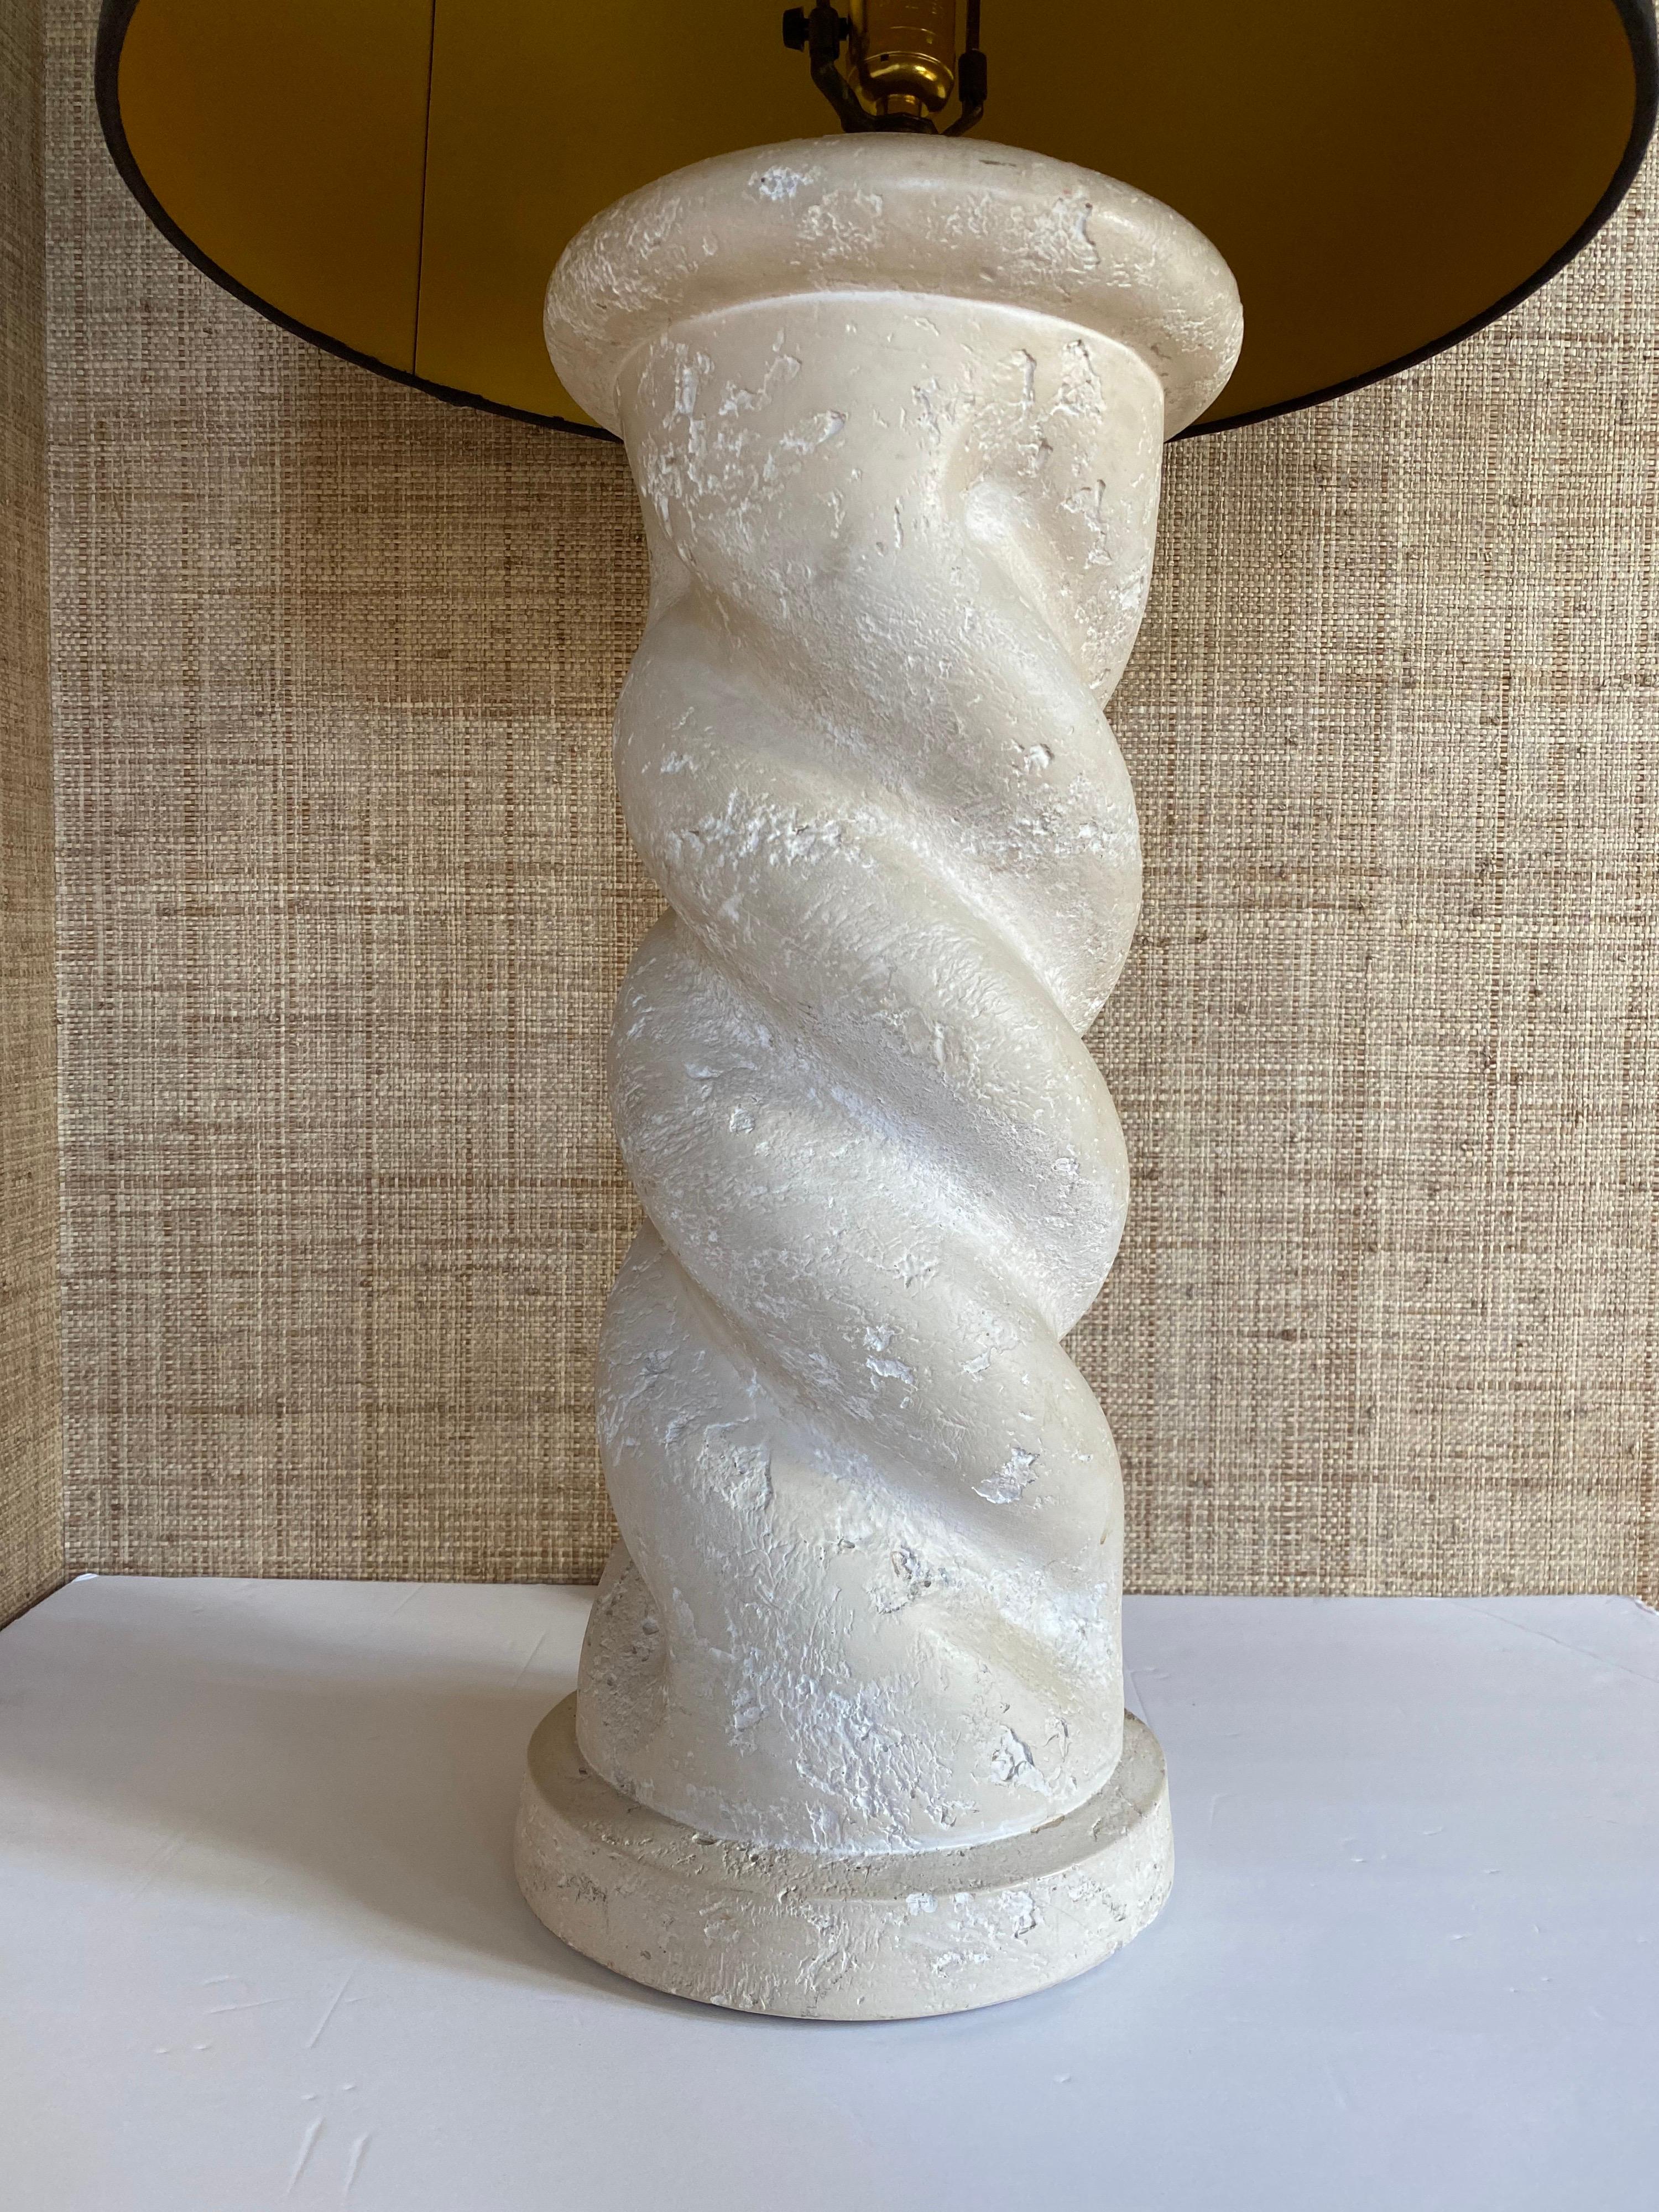 Lampe de table à spirale torsadée, massive et substantielle, de style Michael Taylor, vers les années 1980. Cette lampe architecturale en forme de colonne présente une finition texturée en plâtre blanc mat/crème chaud. Abat-jour non inclus.

Mesures